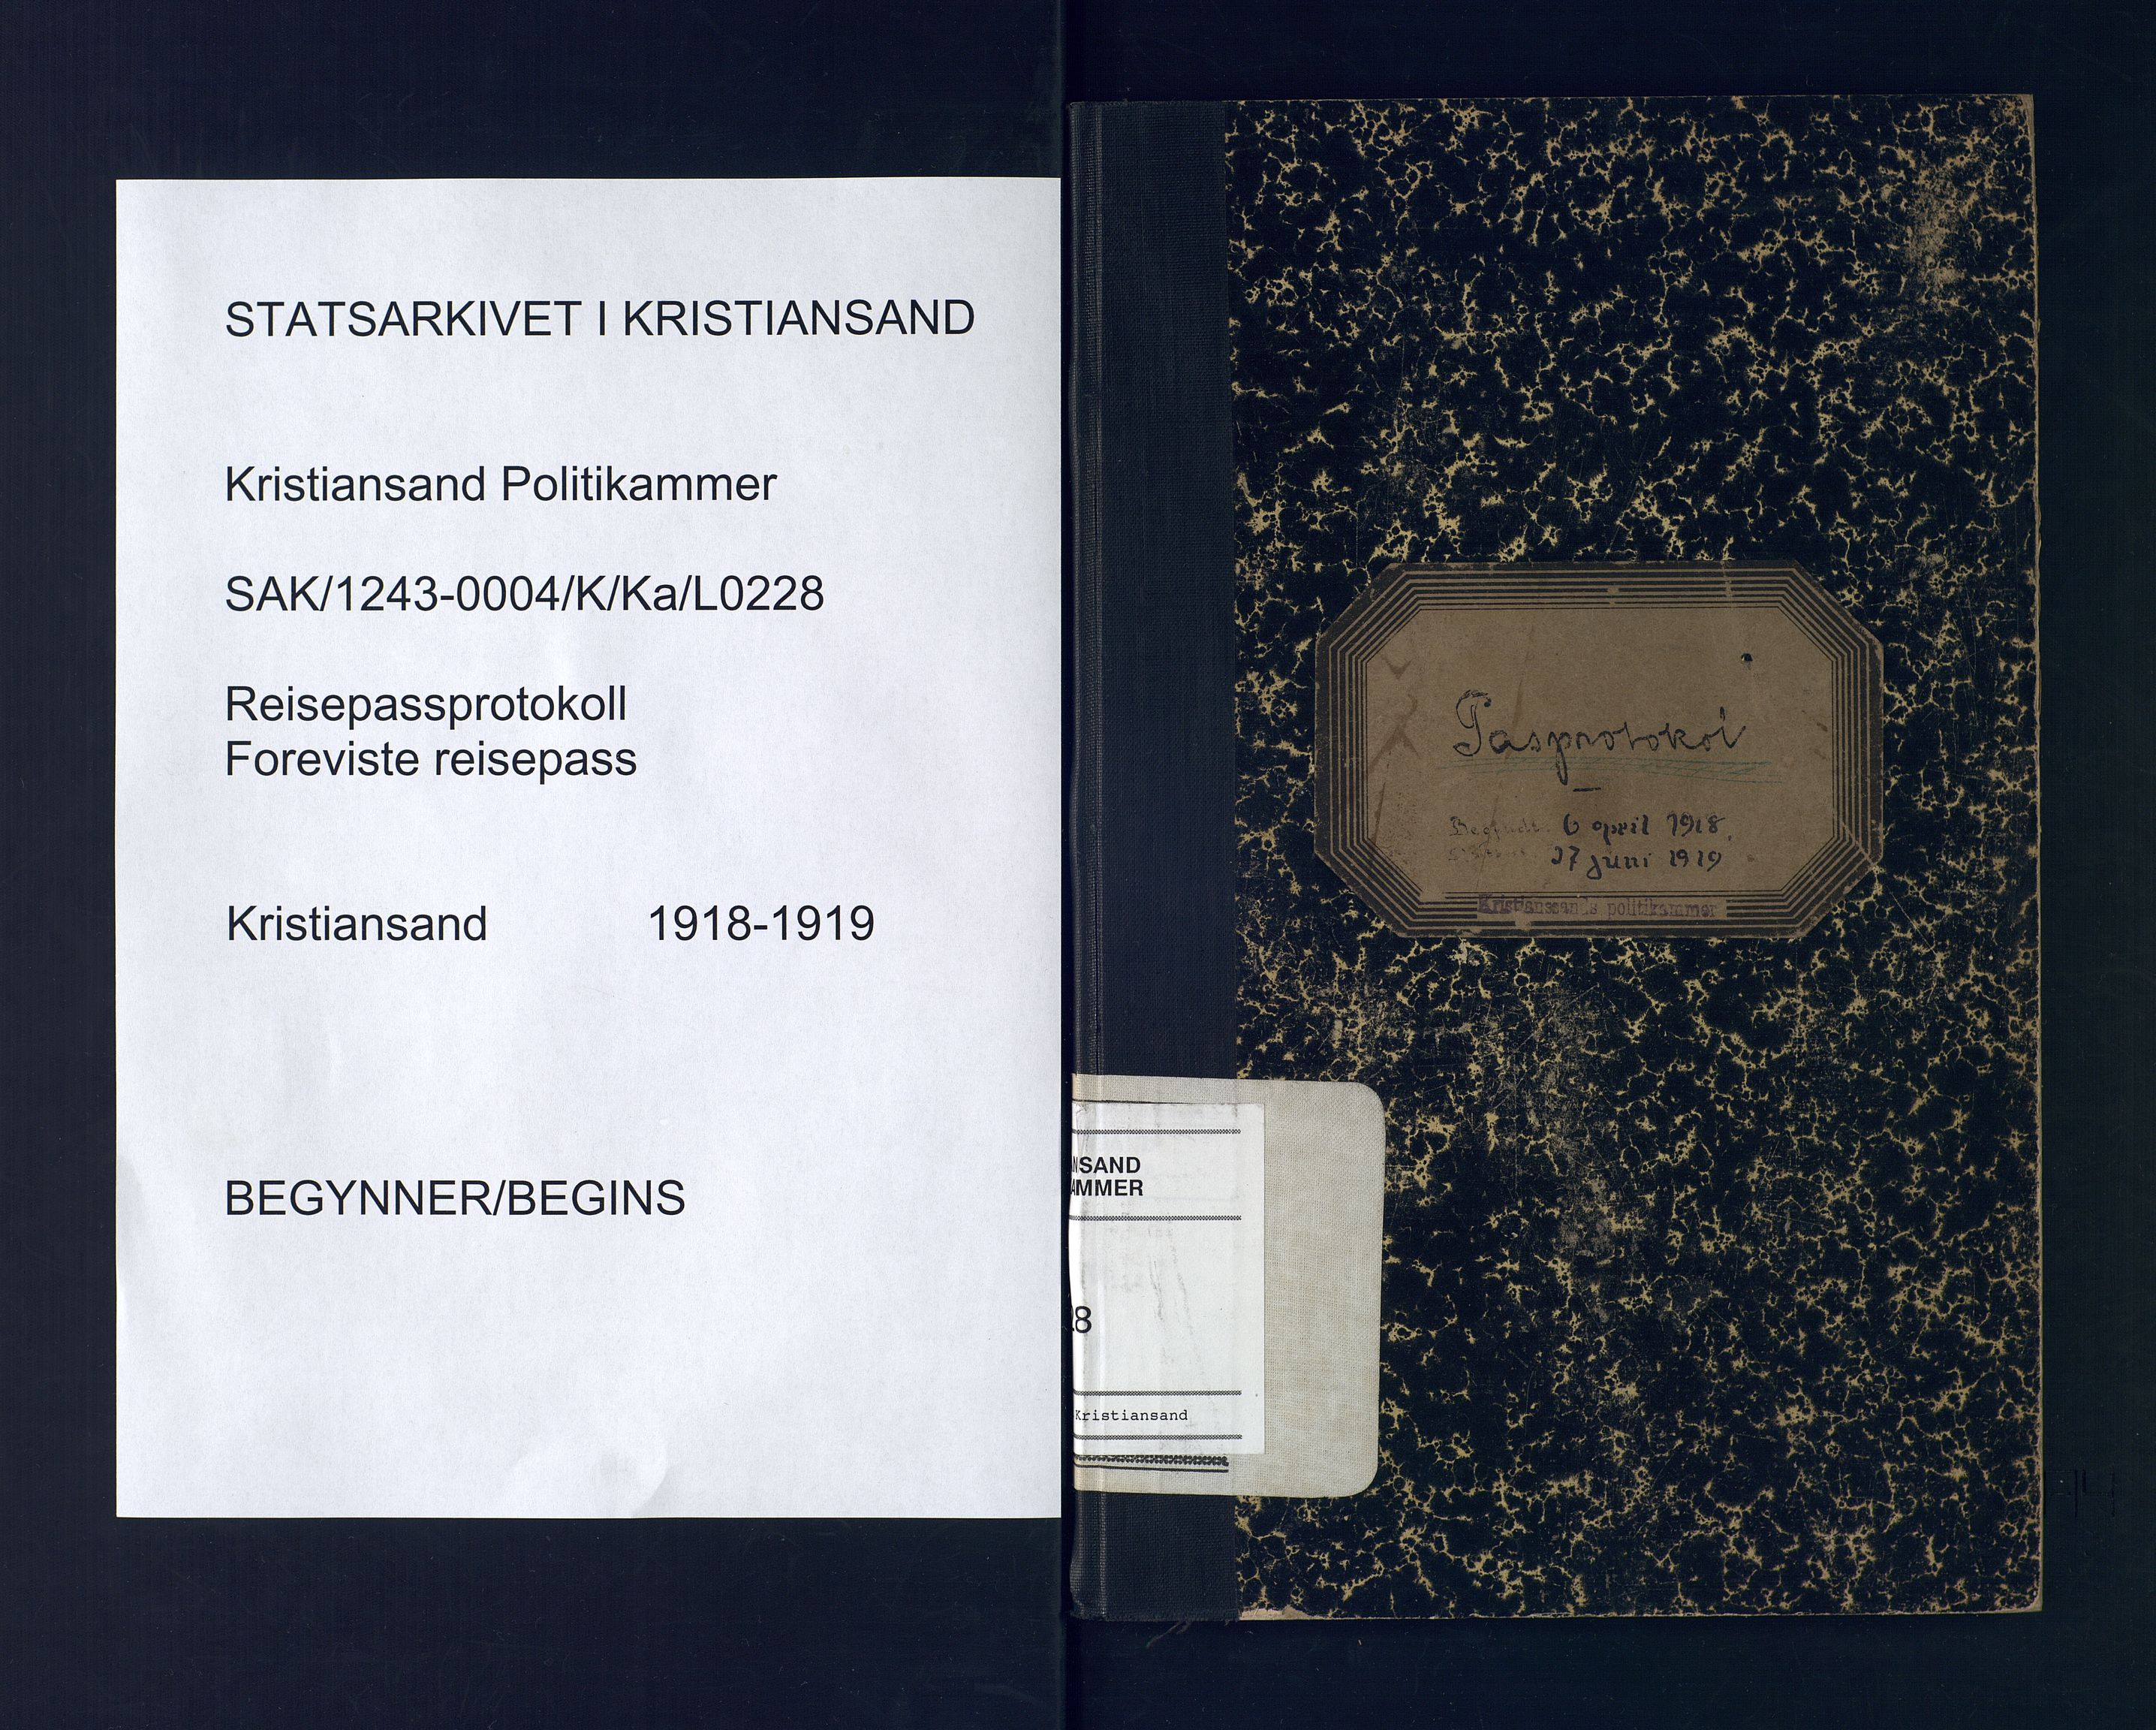 Kristiansand politikammer, SAK/1243-0004/K/Ka/L0228: Passprotokoll foreviste reisepass, 1918-1919